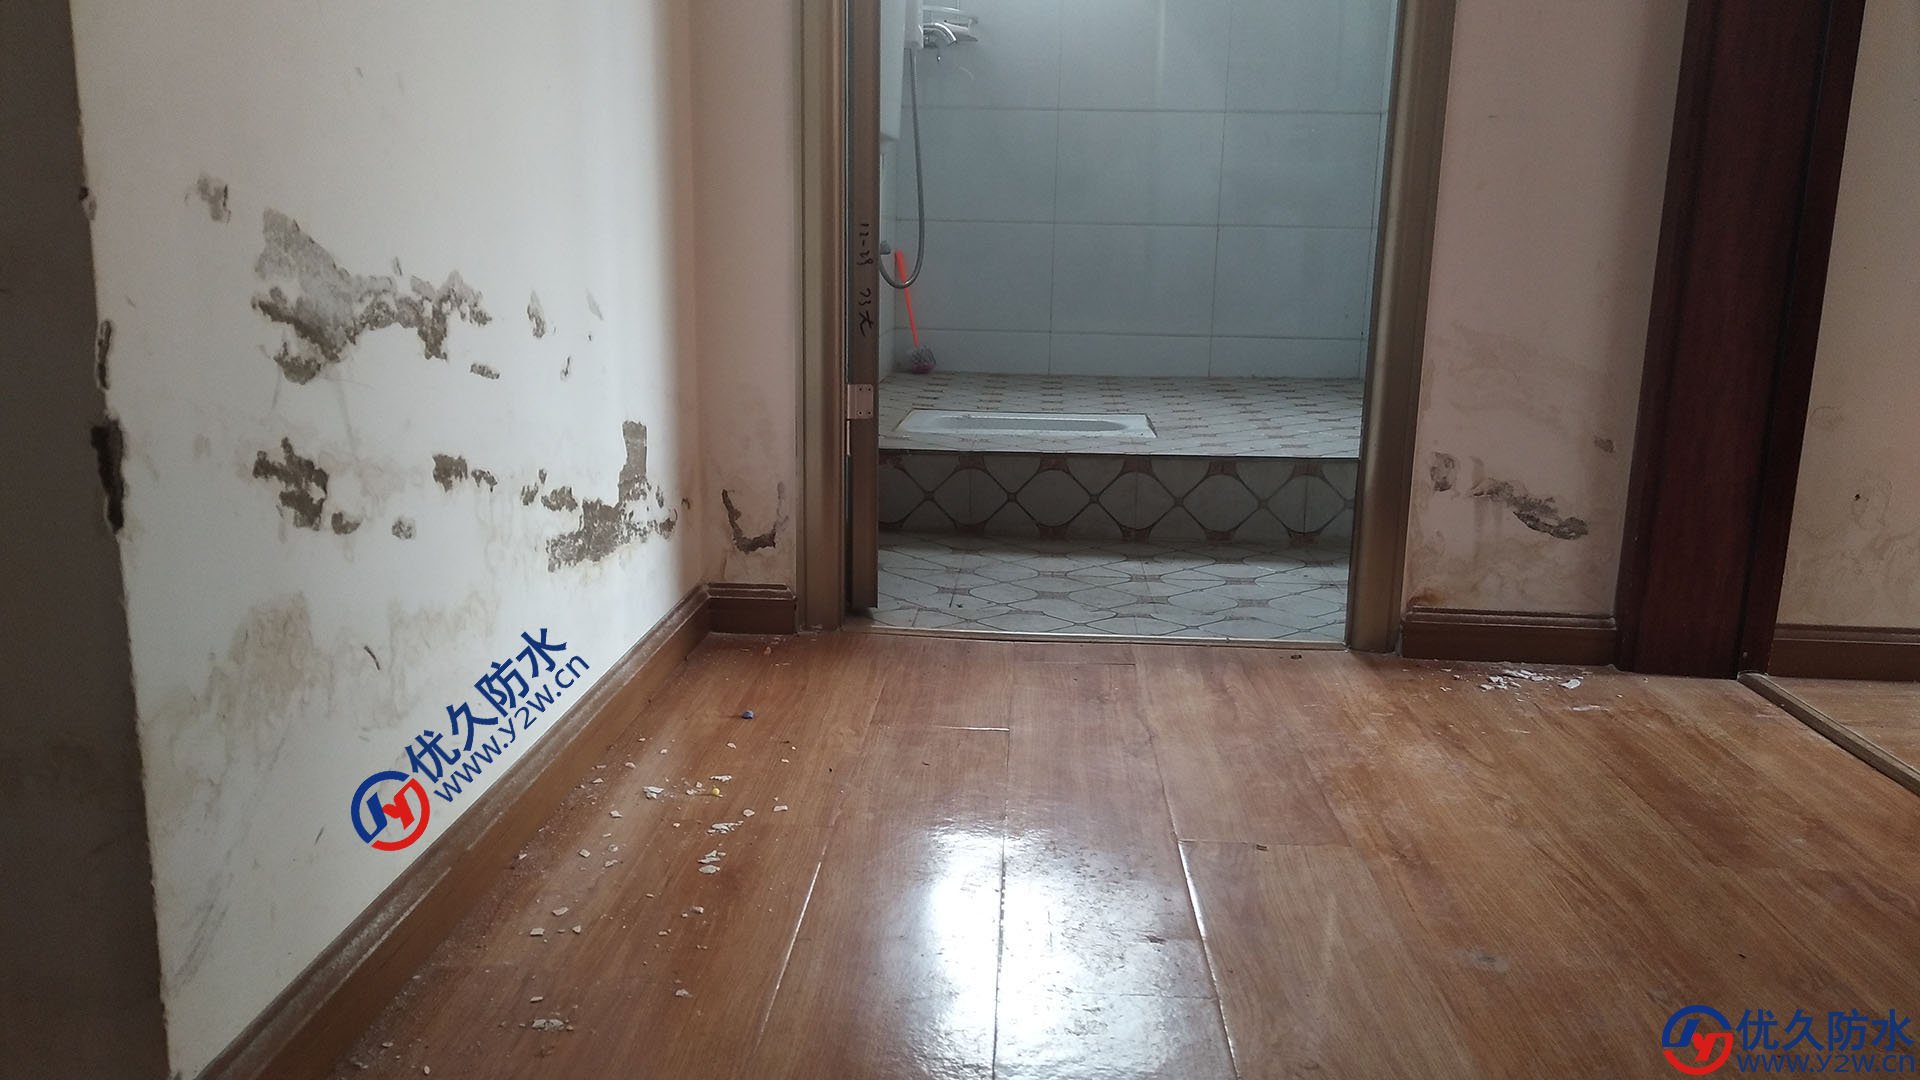 这是卫生间门口两侧严重渗水导致客厅、卧室渗漏